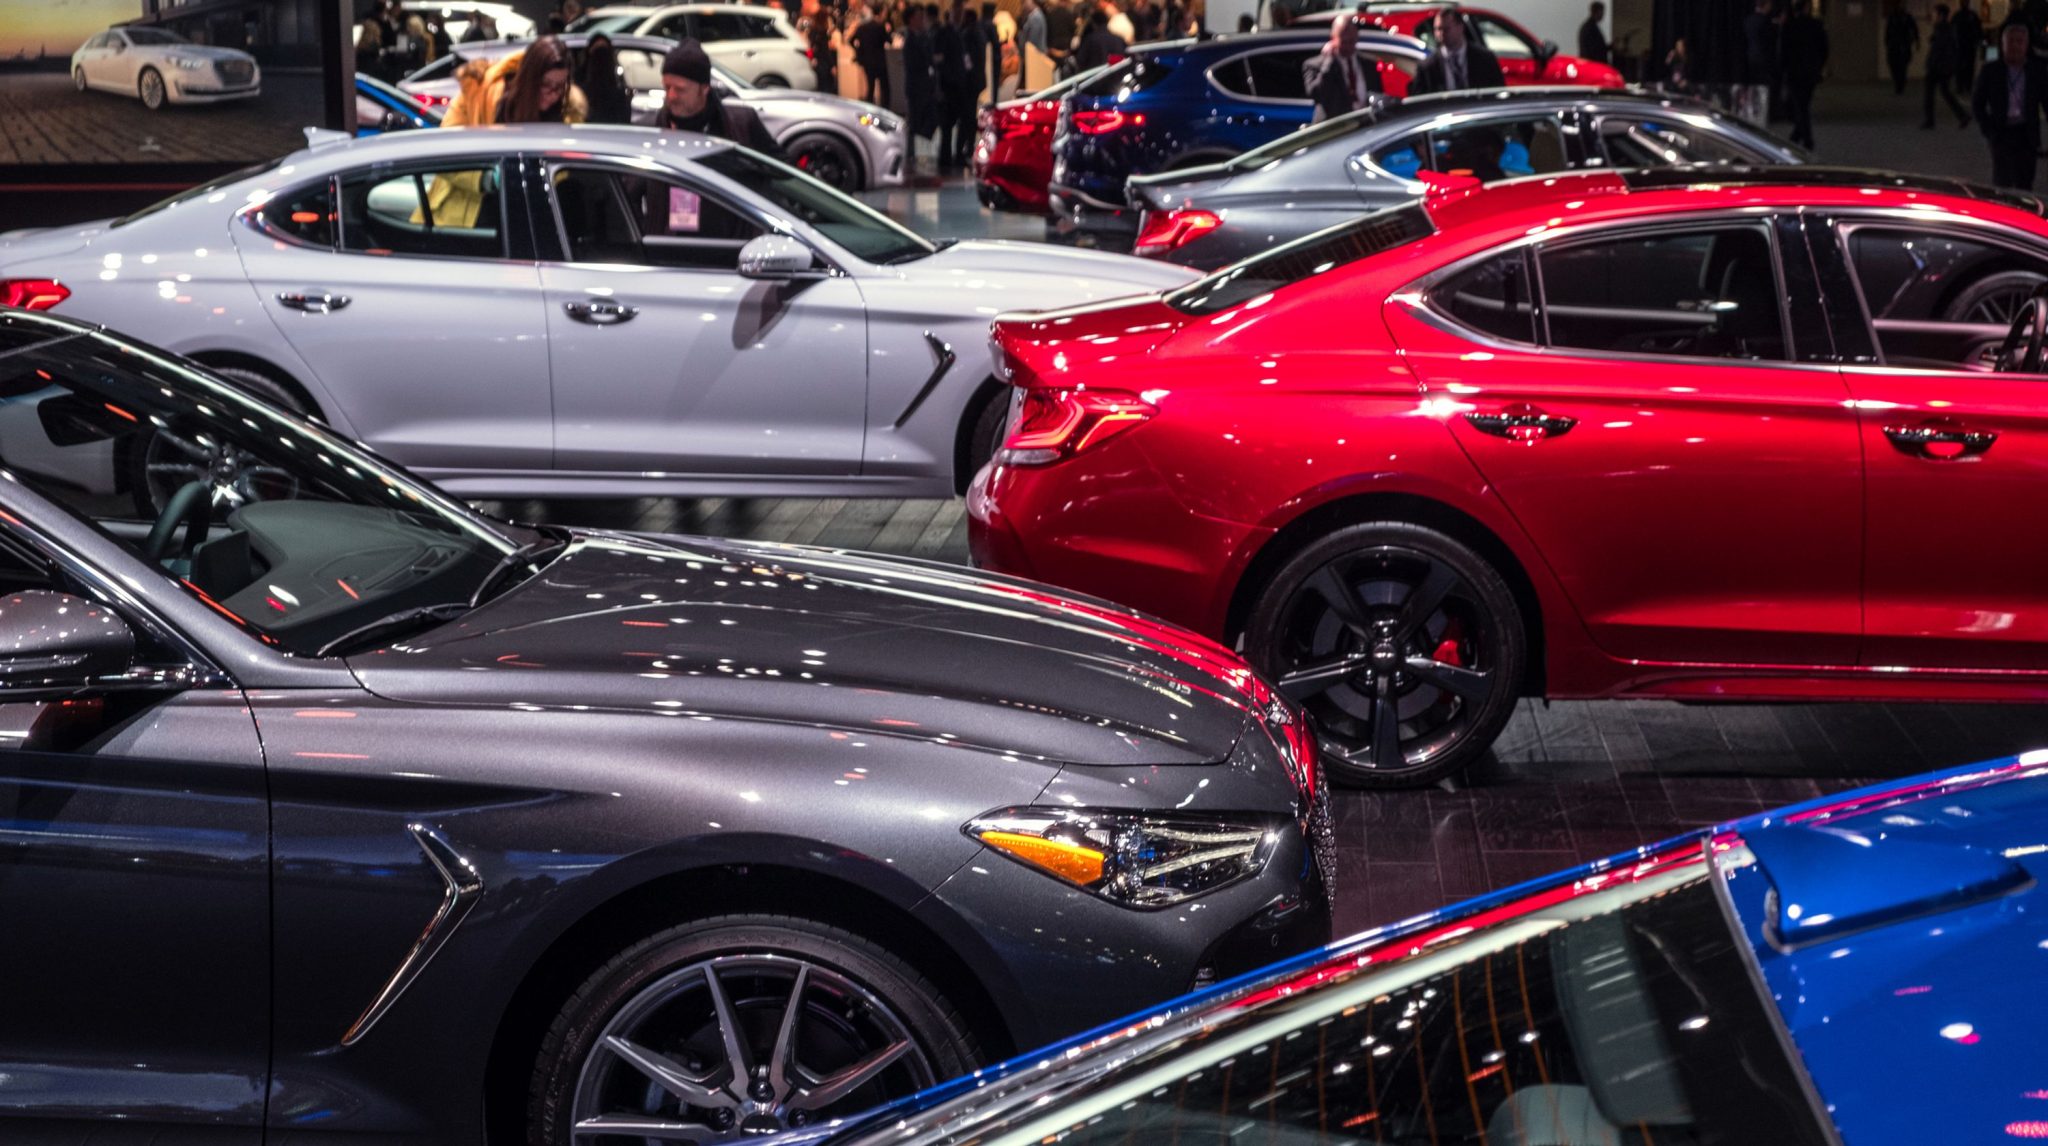 “بالصور” أبرز السيارات التي تم تدشينها في معرض ديترويت للسيارات 2019